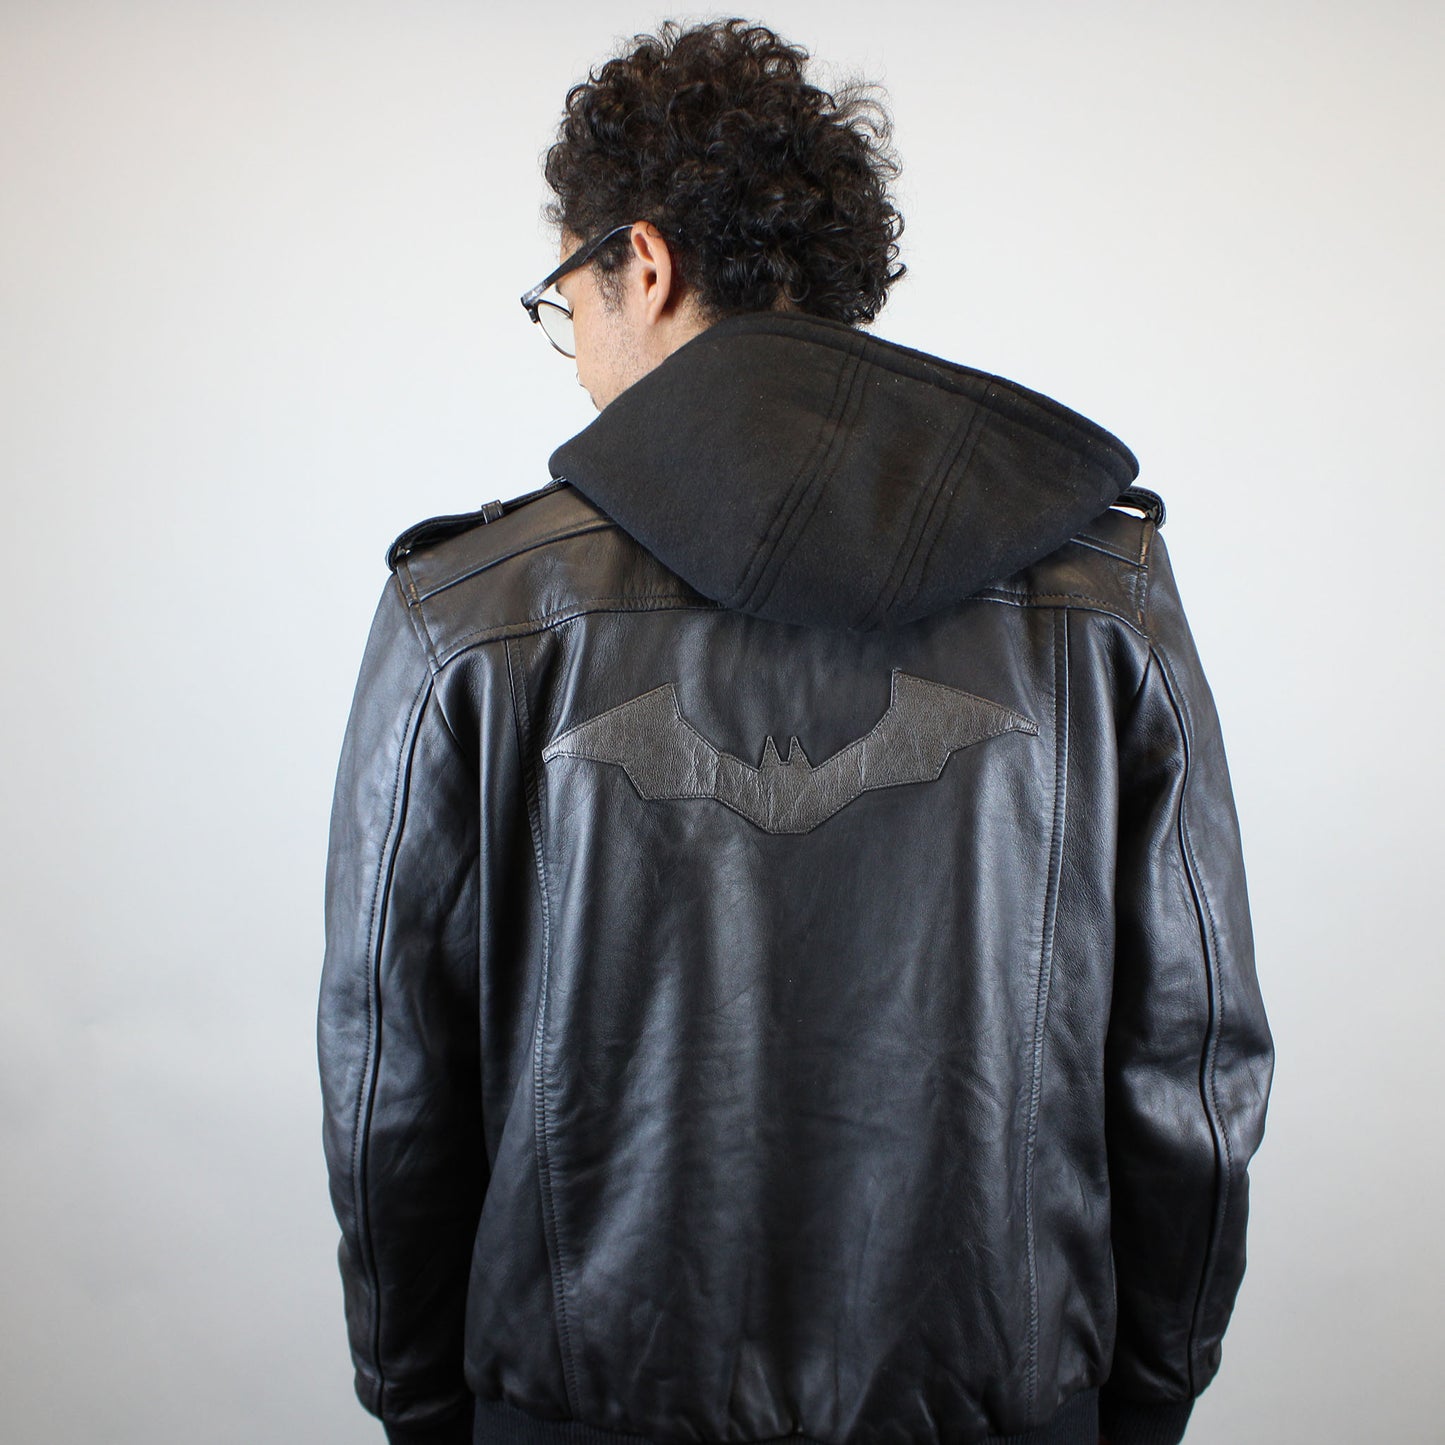 Calligrapher Vooruitzien Ik heb het erkend Batman Symbol (DC Comics) Black Leather Jacket with Removable Hoodie I –  Collector's Outpost